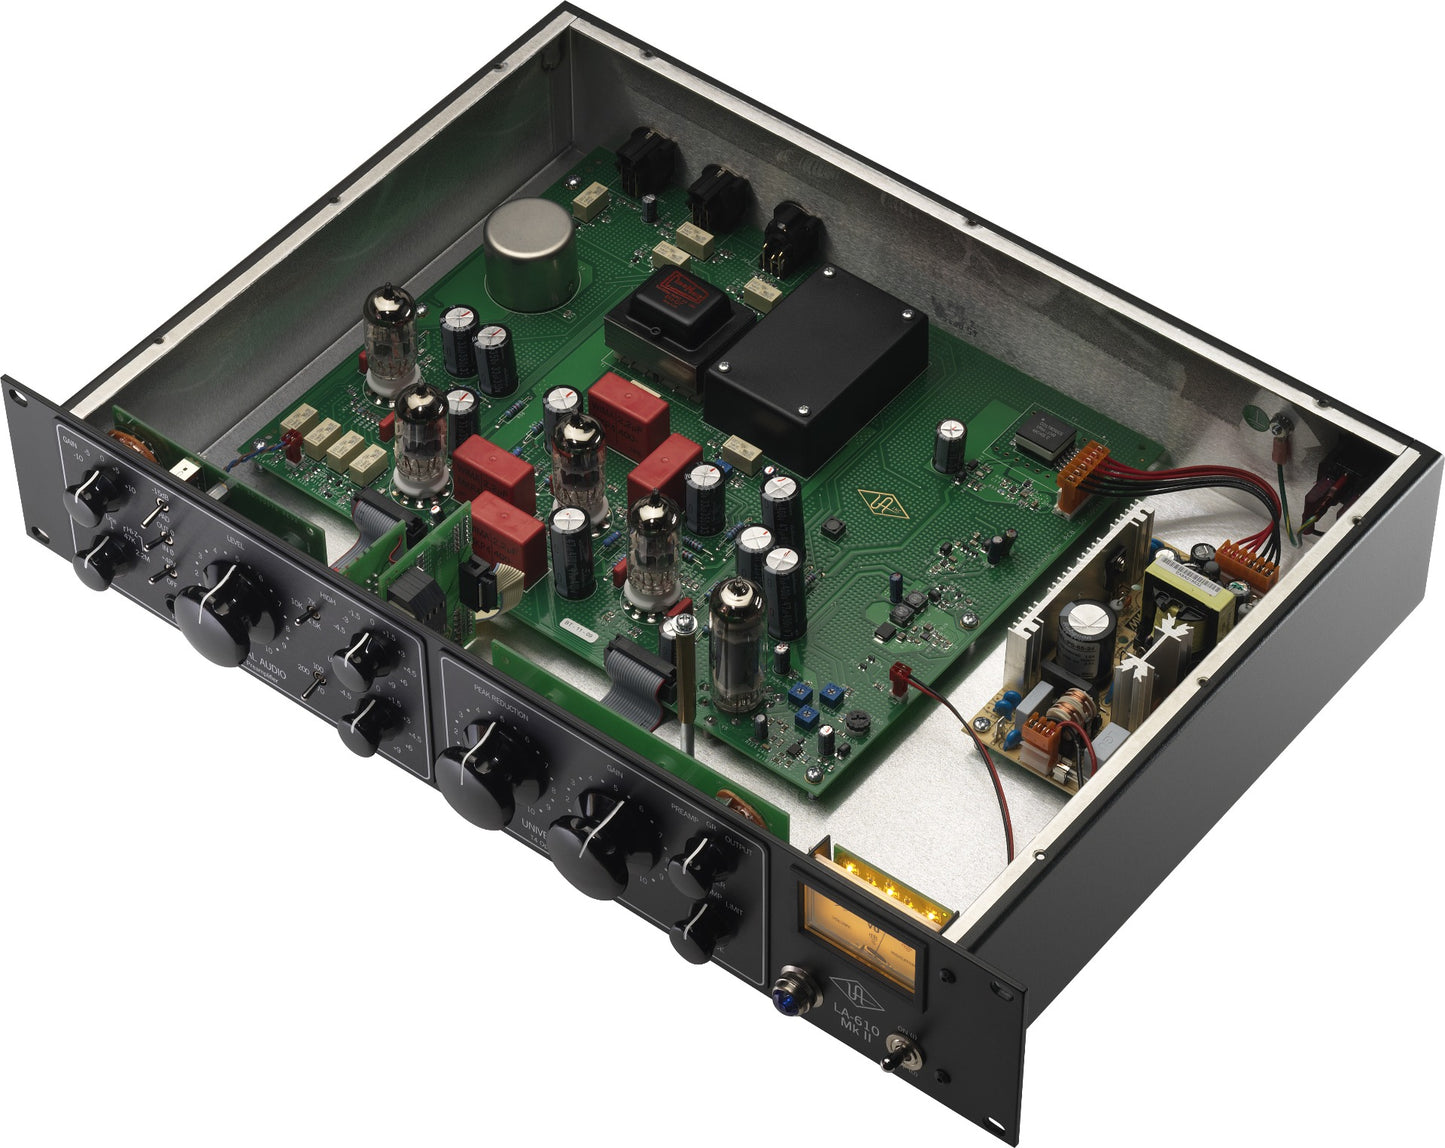 Universal Audio LA 610 MKII Mic Pre Compressor Channel Strip